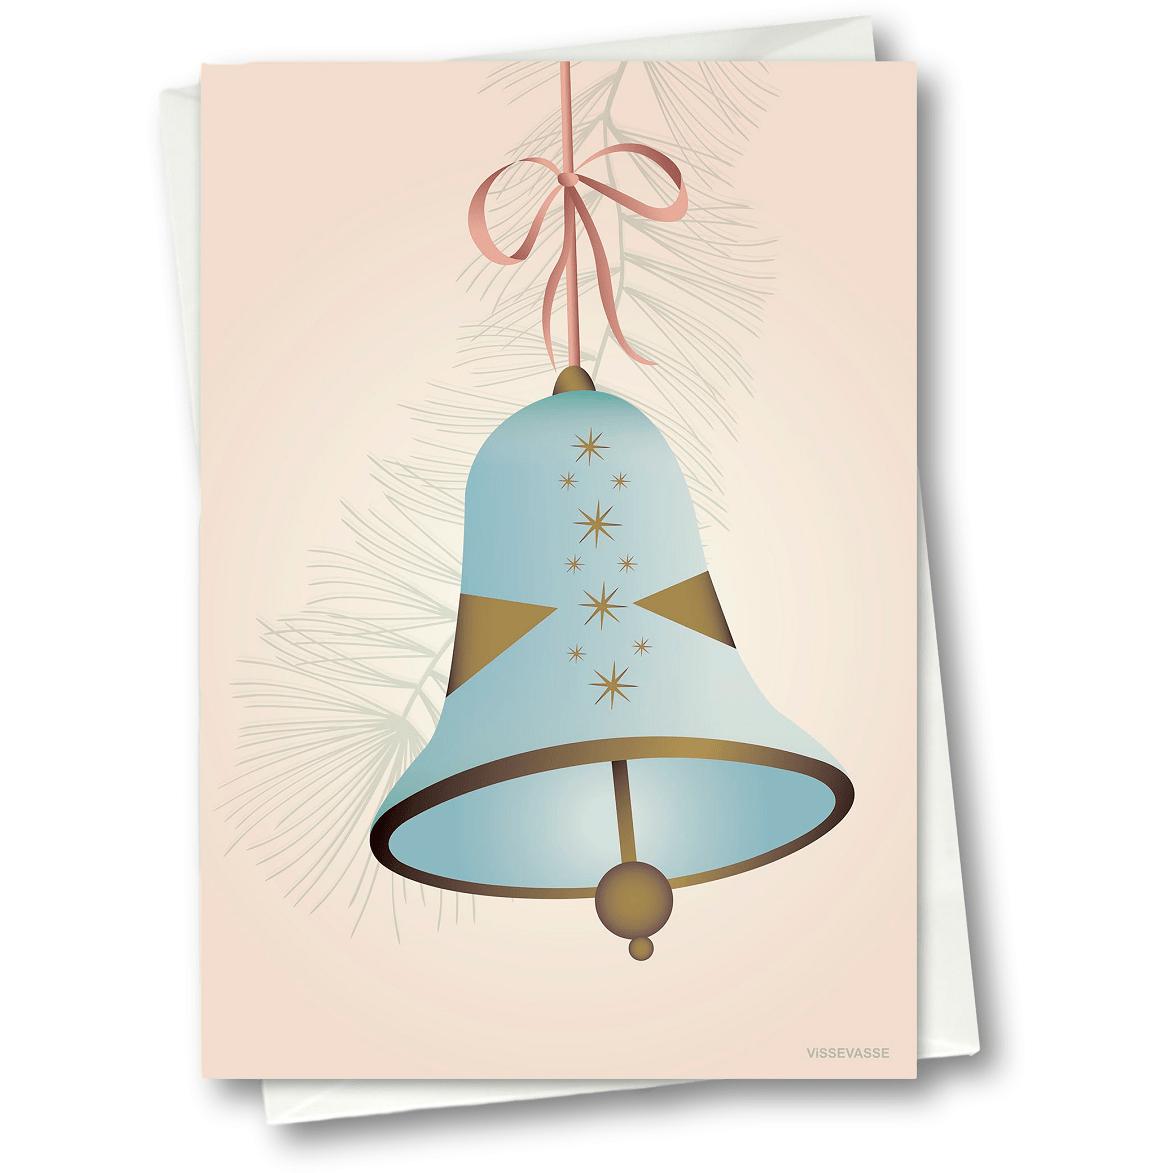 Vissevasse Weihnachtsglockengrußkarte 15 x21 cm, blau